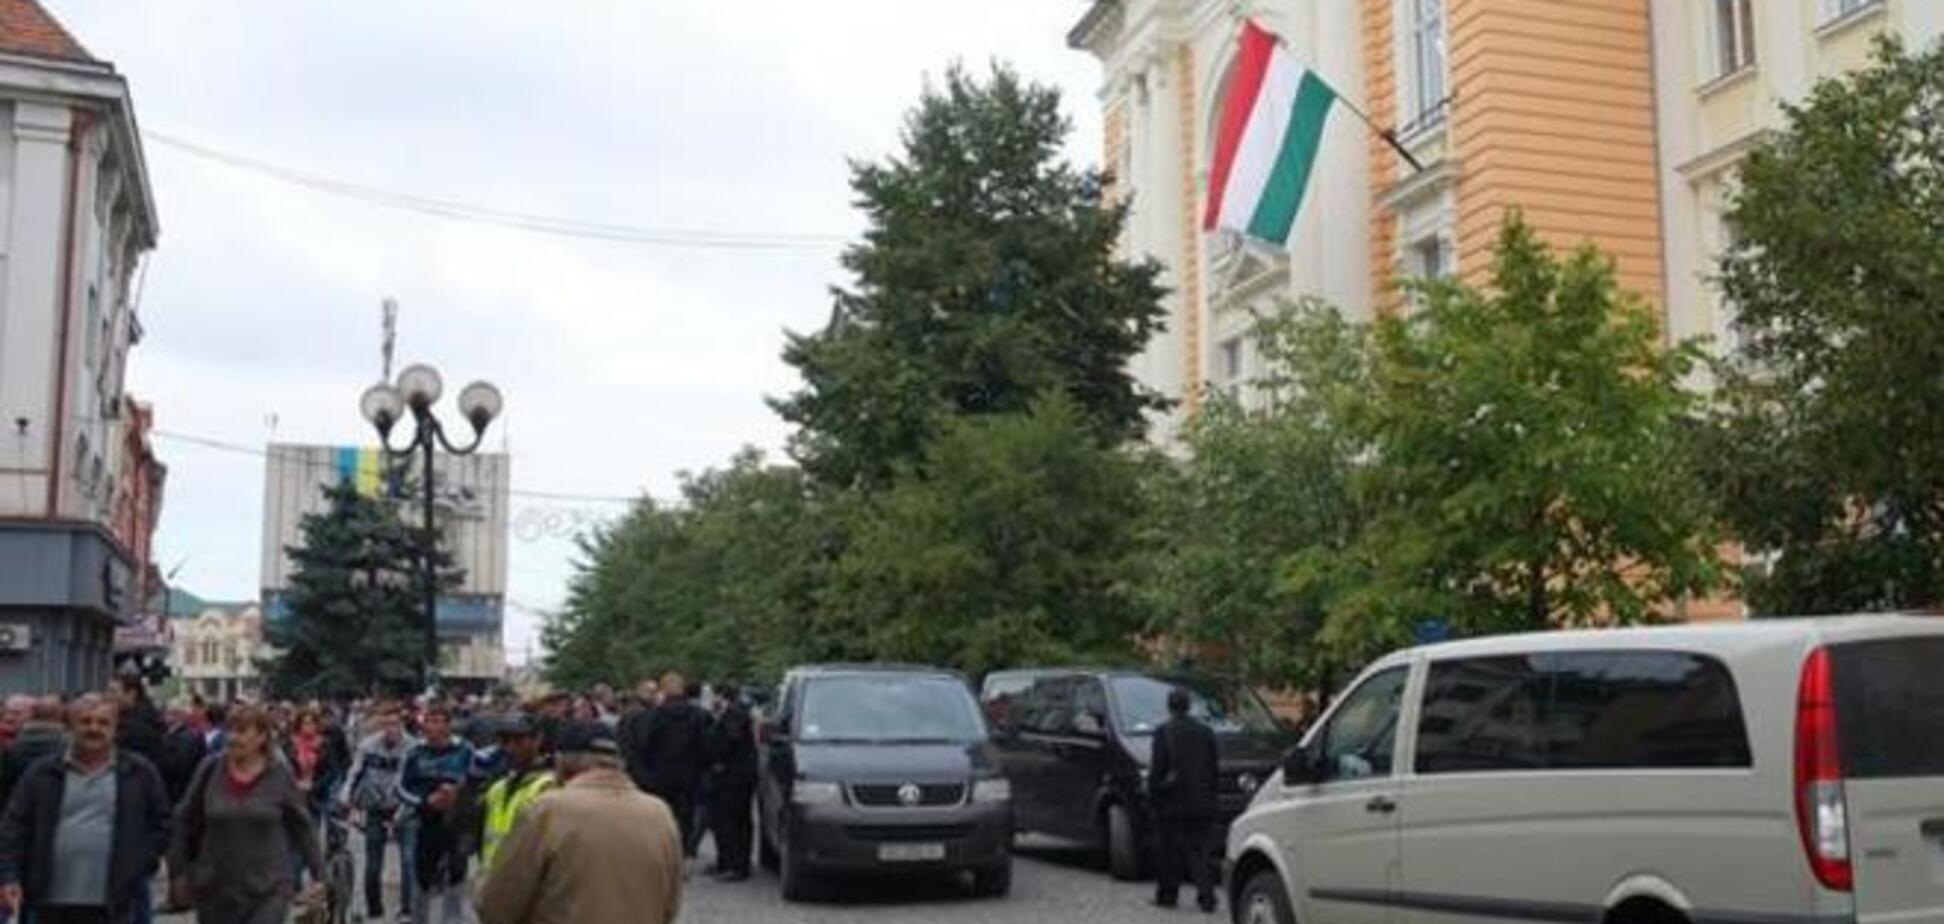 Премьер Венгрии прибыл в Украину на кортеже из 11 бронированных авто. Опубликованы фото